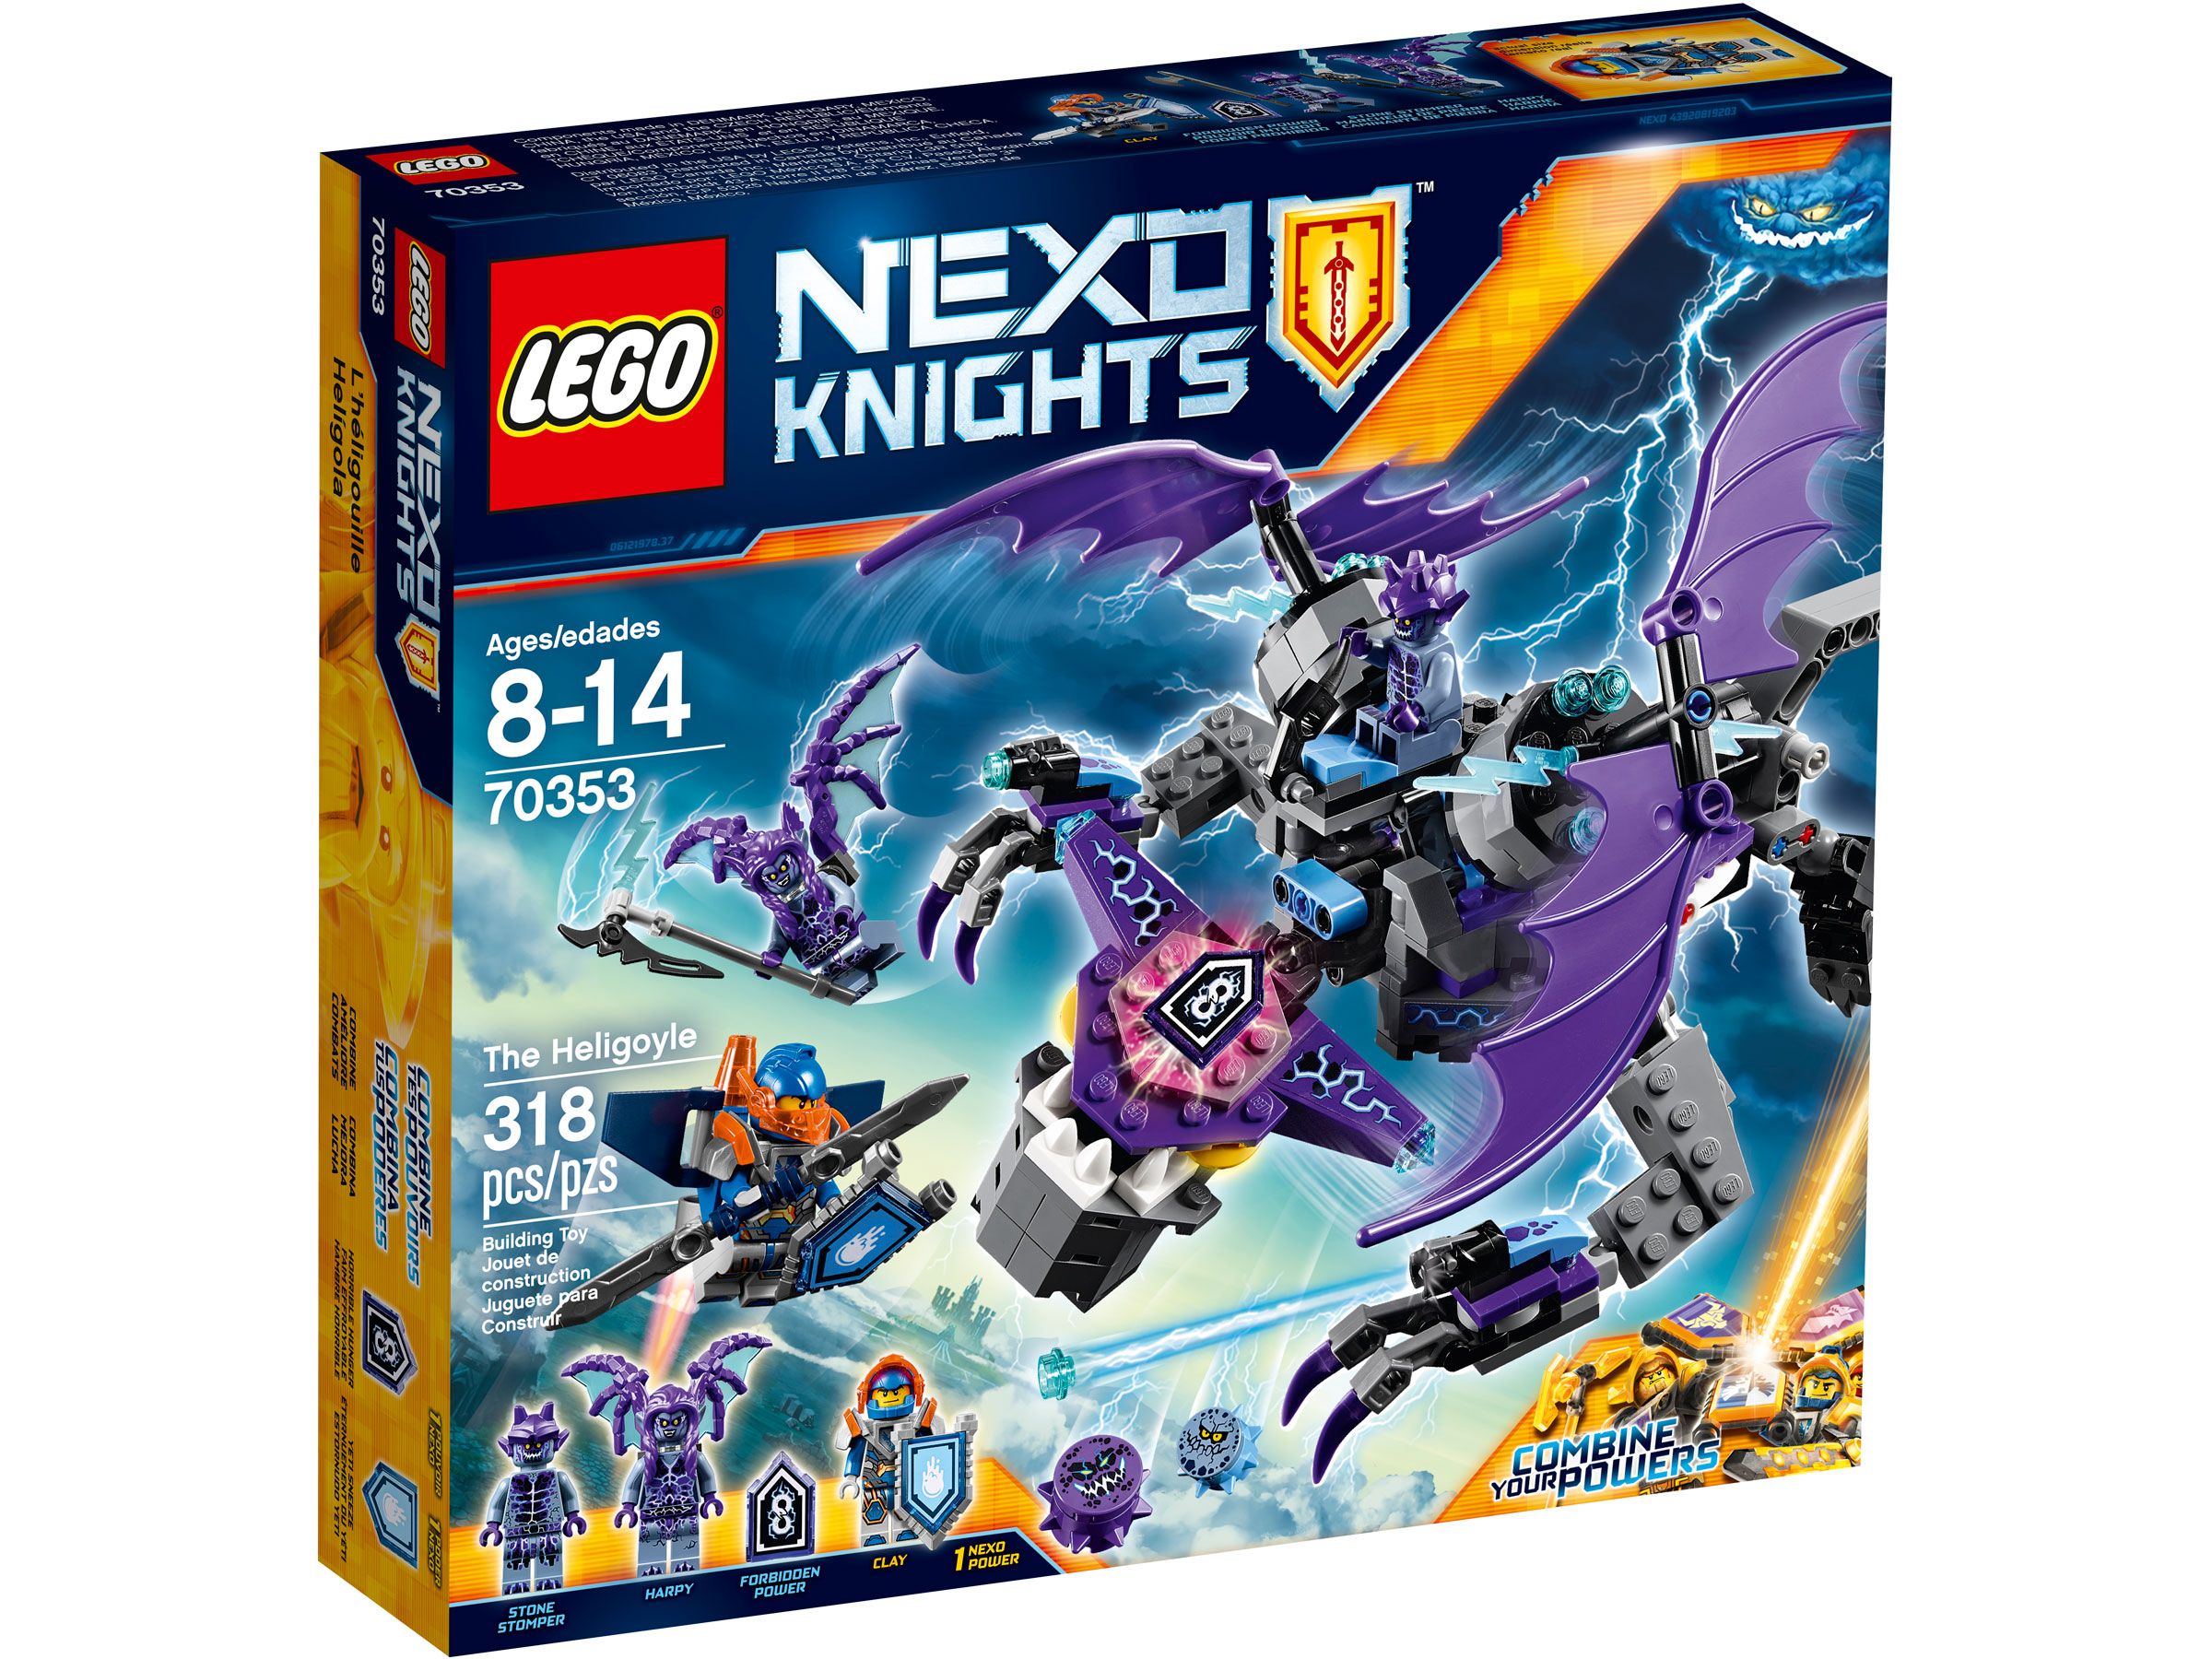 LEGO Nexo Knights 70353 Der Gargoyl-Heli LEGO_70353_Box1_v39.jpg